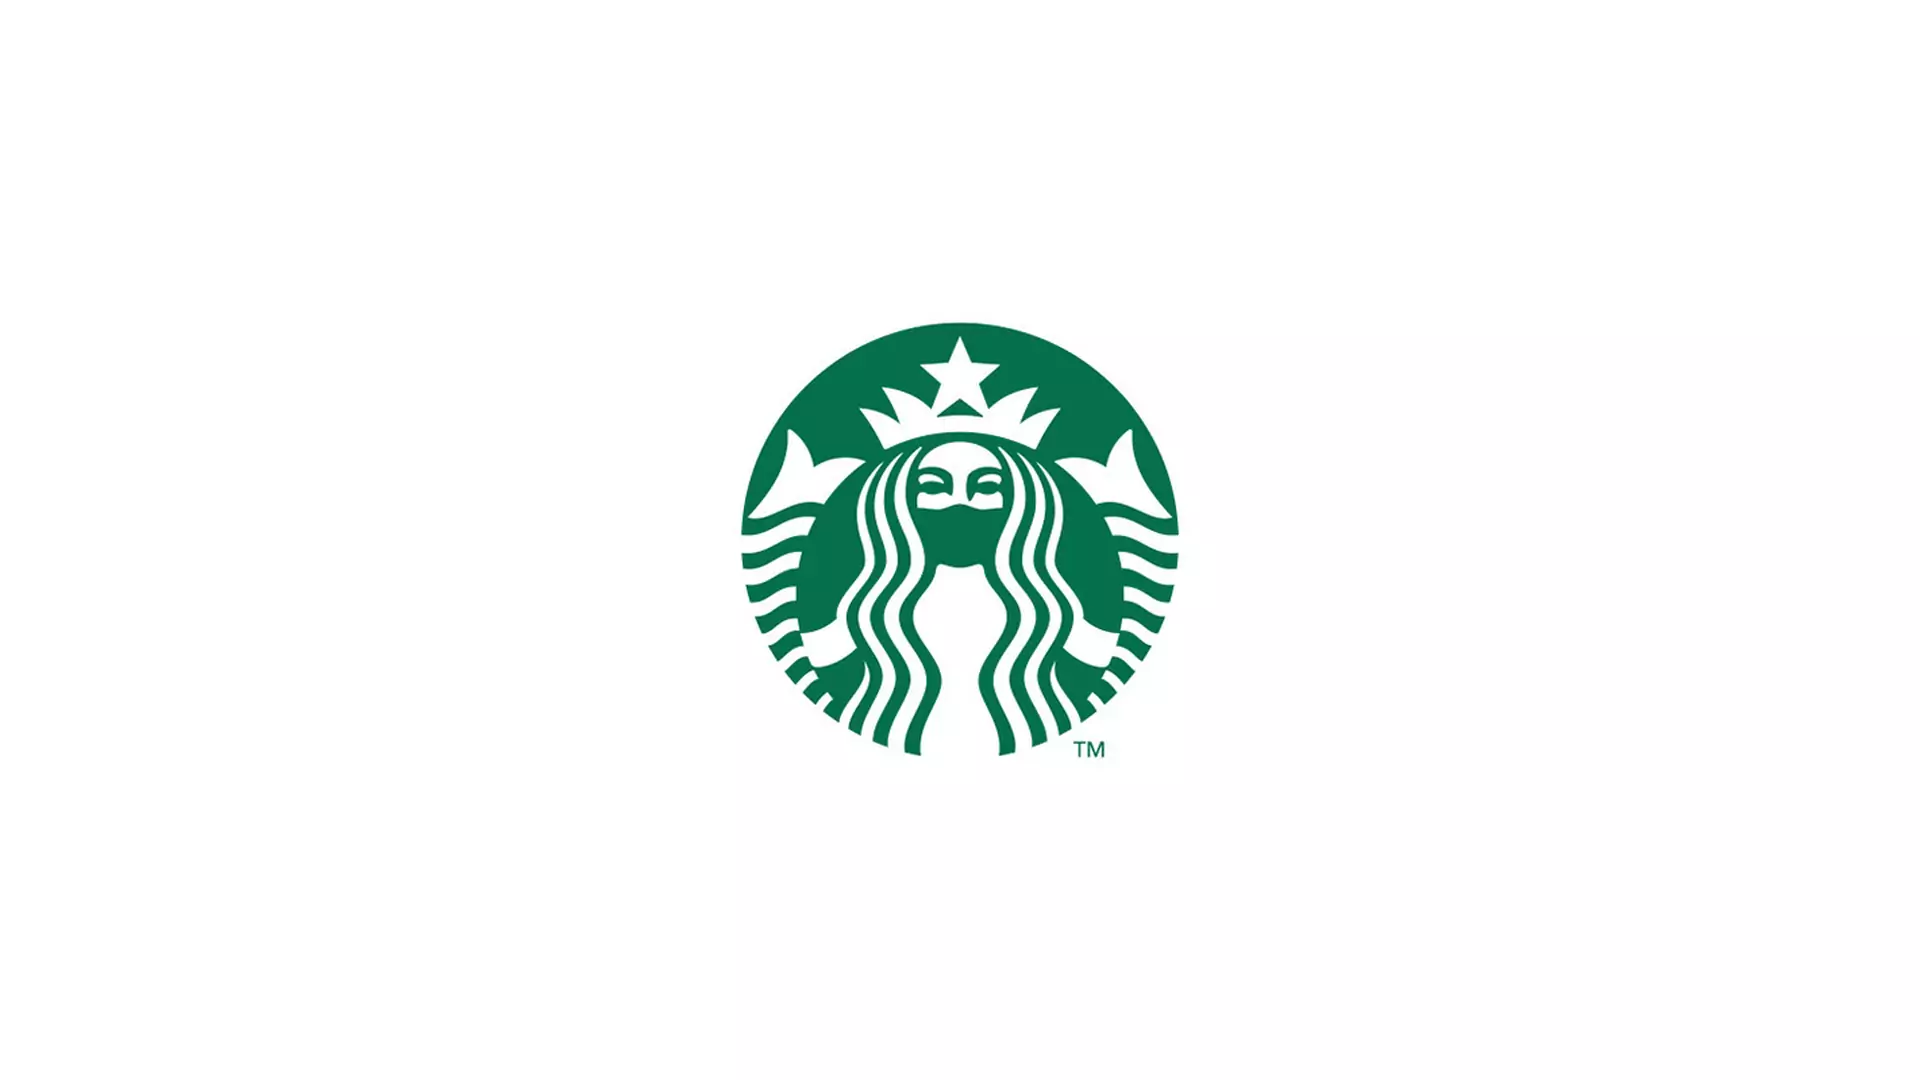 Piwo Corona z nową nazwą i syrena Starbucks w masce. Grafik przerobił logotypy znanych marek na czas pandemii